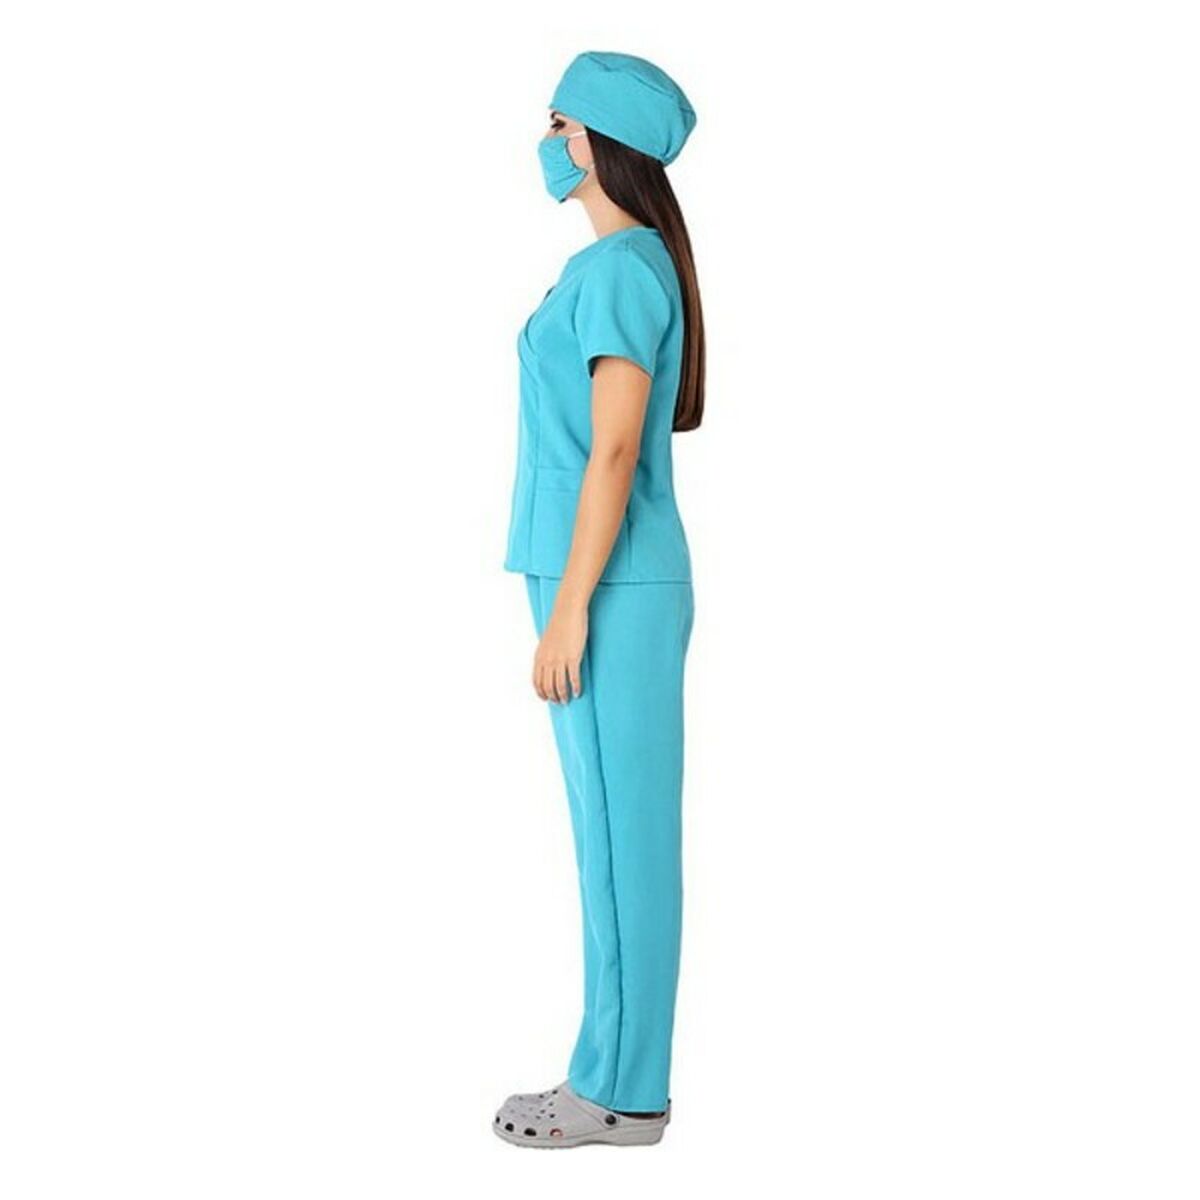 Costume per Adulti 115538 Azzurro (4 Pezzi) Taglia:XL - Disponibile in 3-4 giorni lavorativi